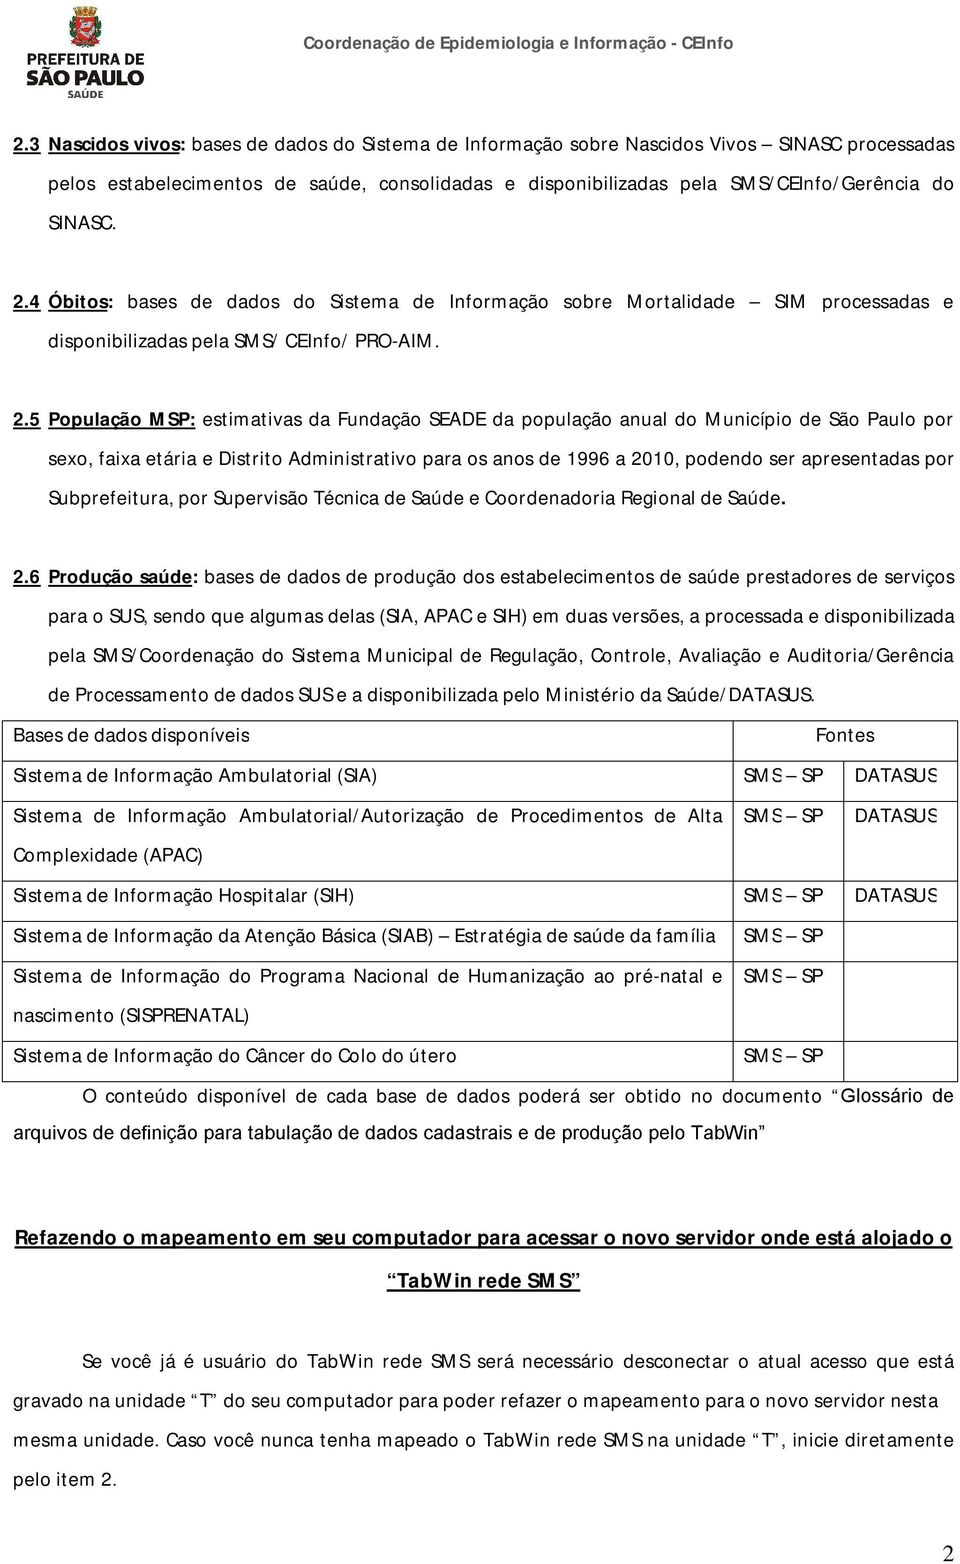 5 População MSP: estimativas da Fundação SEADE da população anual do Município de São Paulo por sexo, faixa etária e Distrito Administrativo para os anos de 1996 a 2010, podendo ser apresentadas por